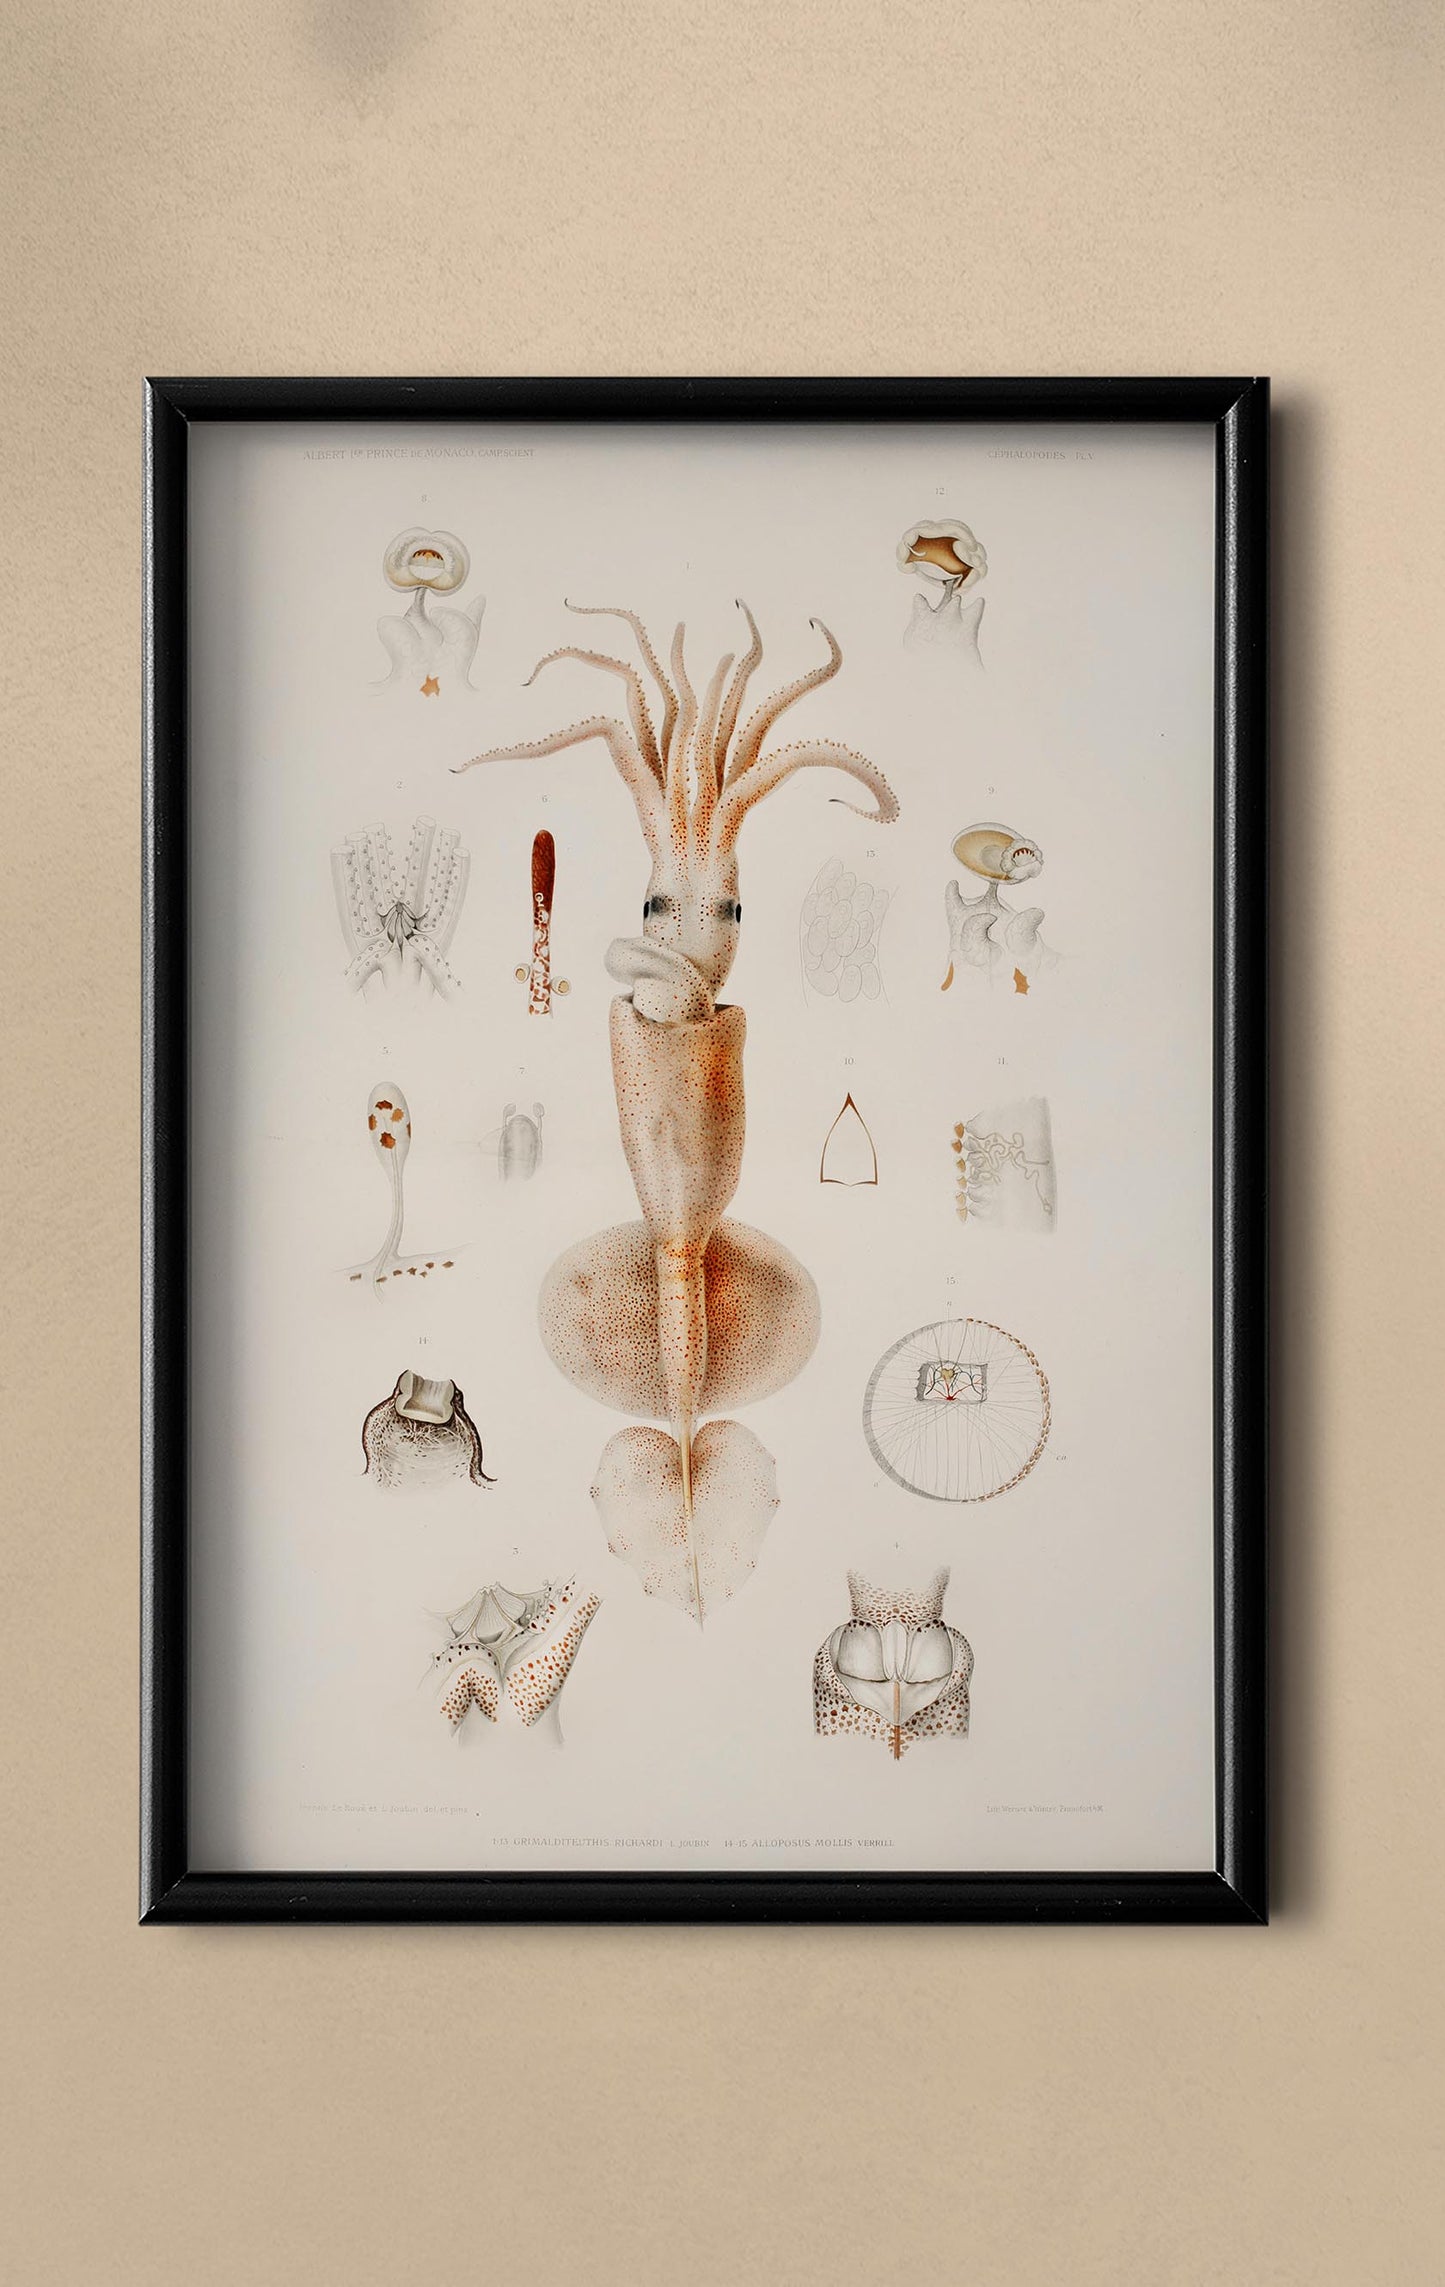 Squids External and Internal Organs Poster